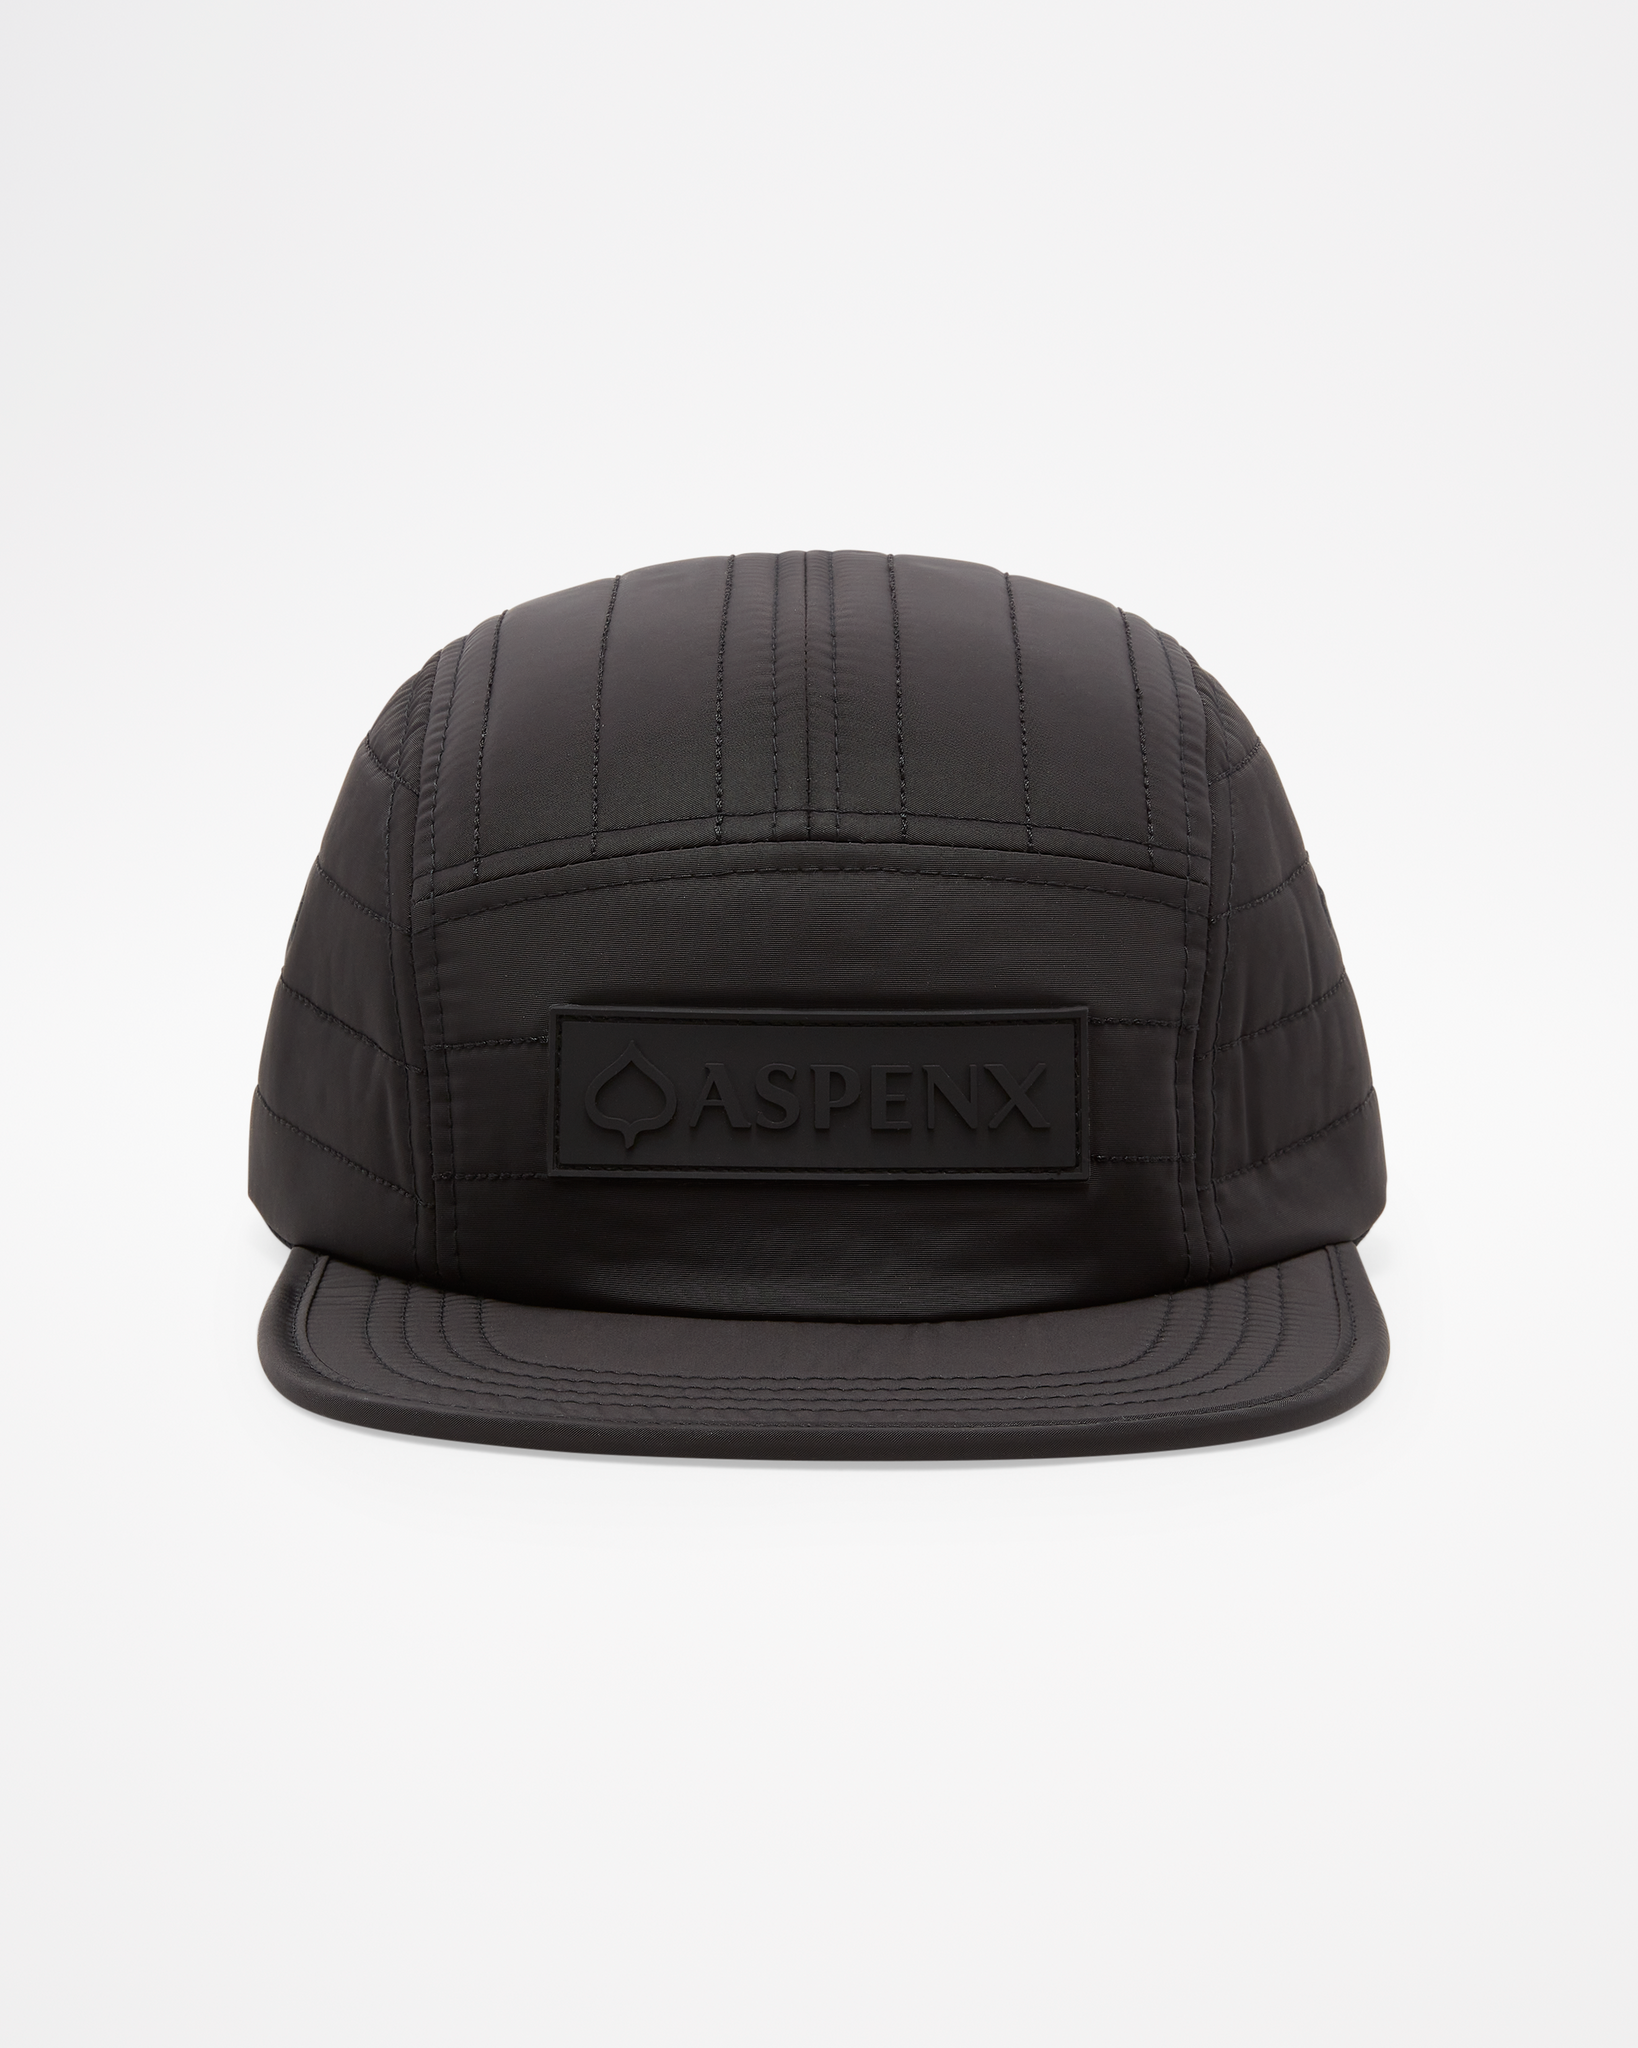 Simba ASPENX Hat